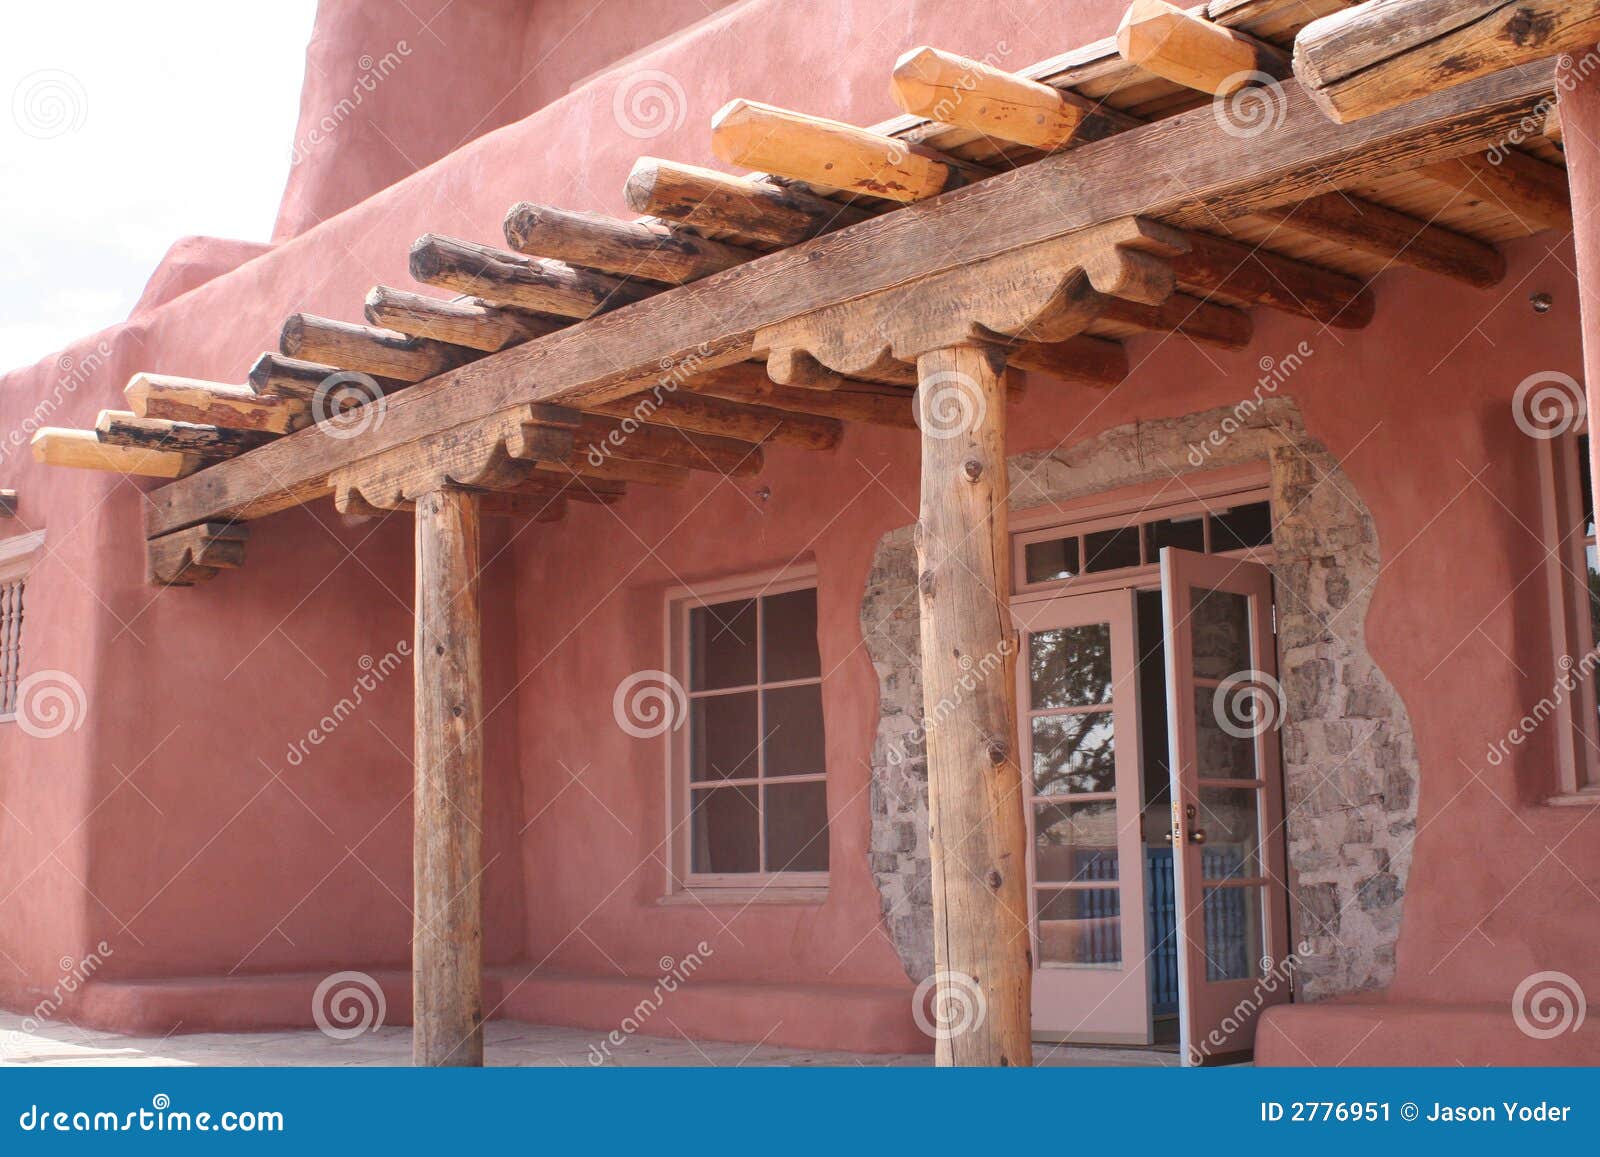 Desert Adobe House